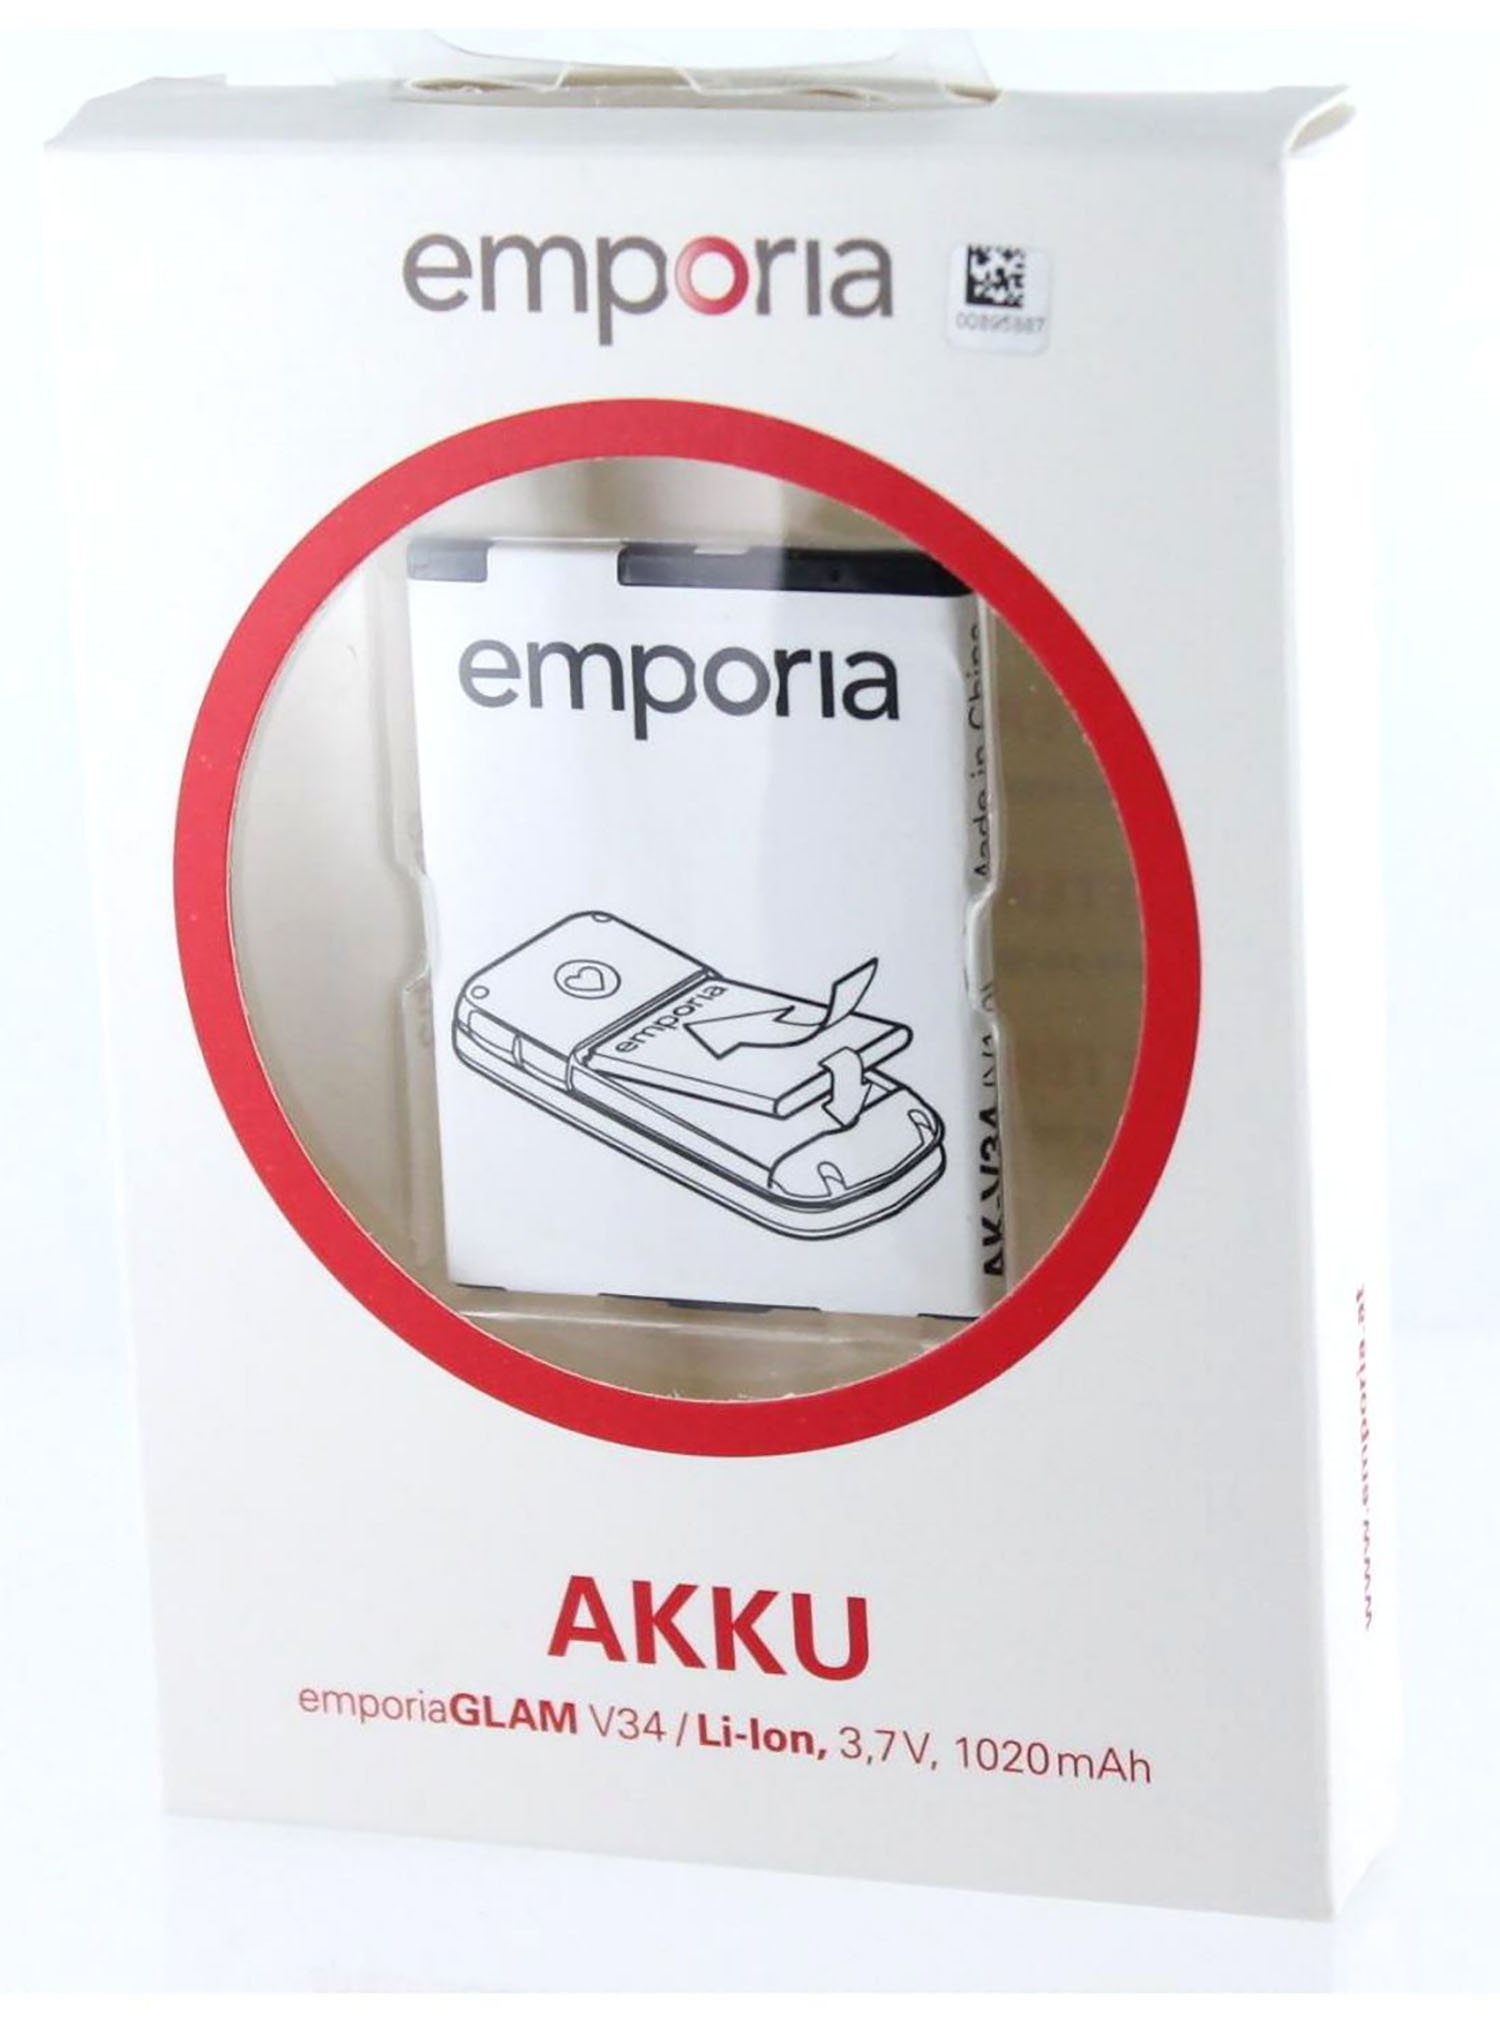 Original AK-V34 1020 für Emporia Akkupacks Akku Emporia mAh Akku